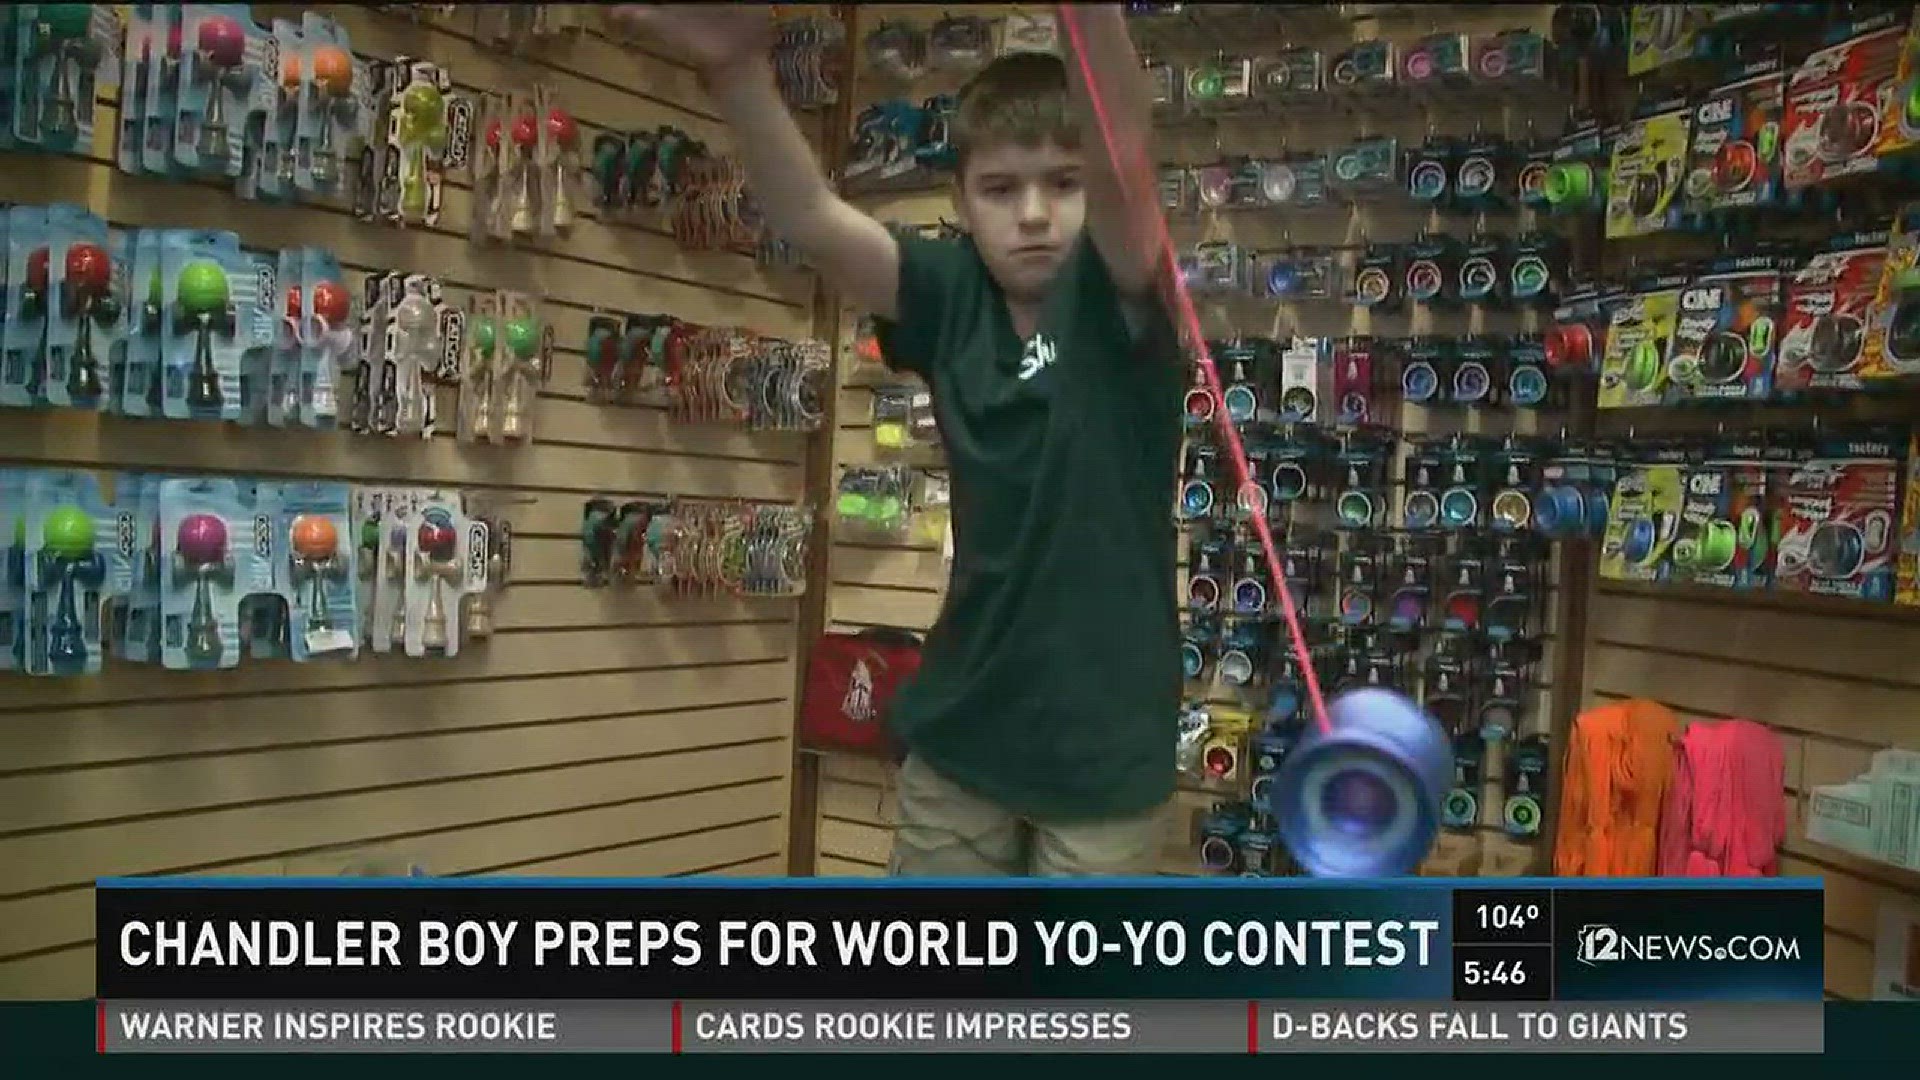 Chandler boy preps for world Yo-Yo contest